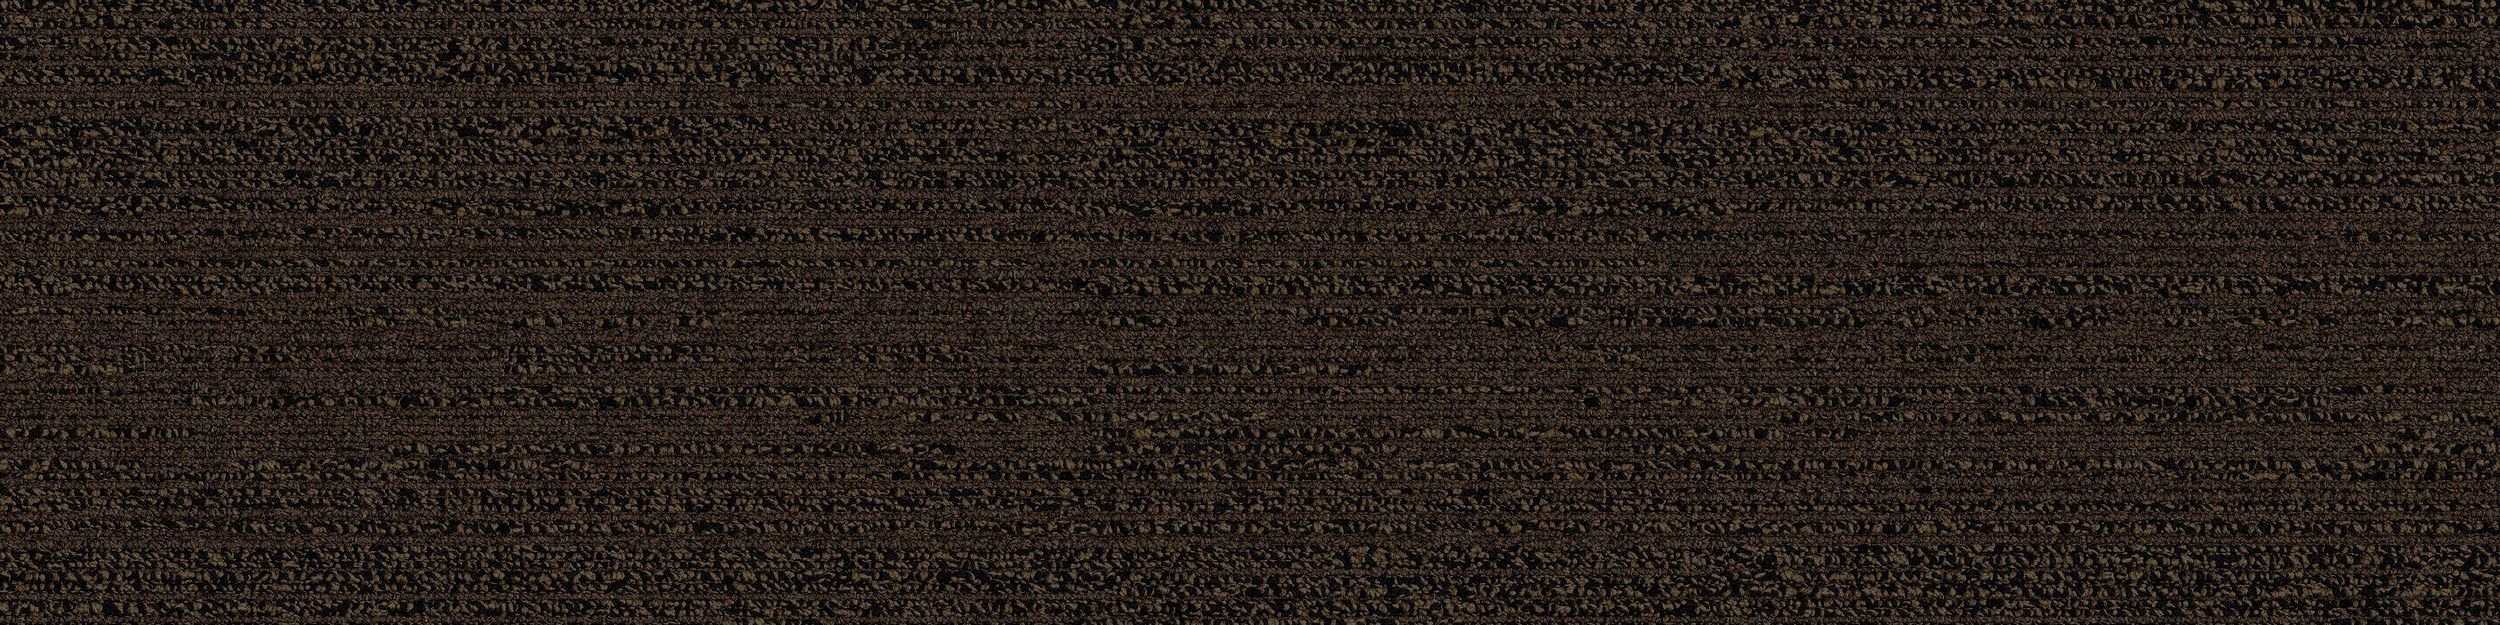 NS231 Carpet Tile In Fennel imagen número 1